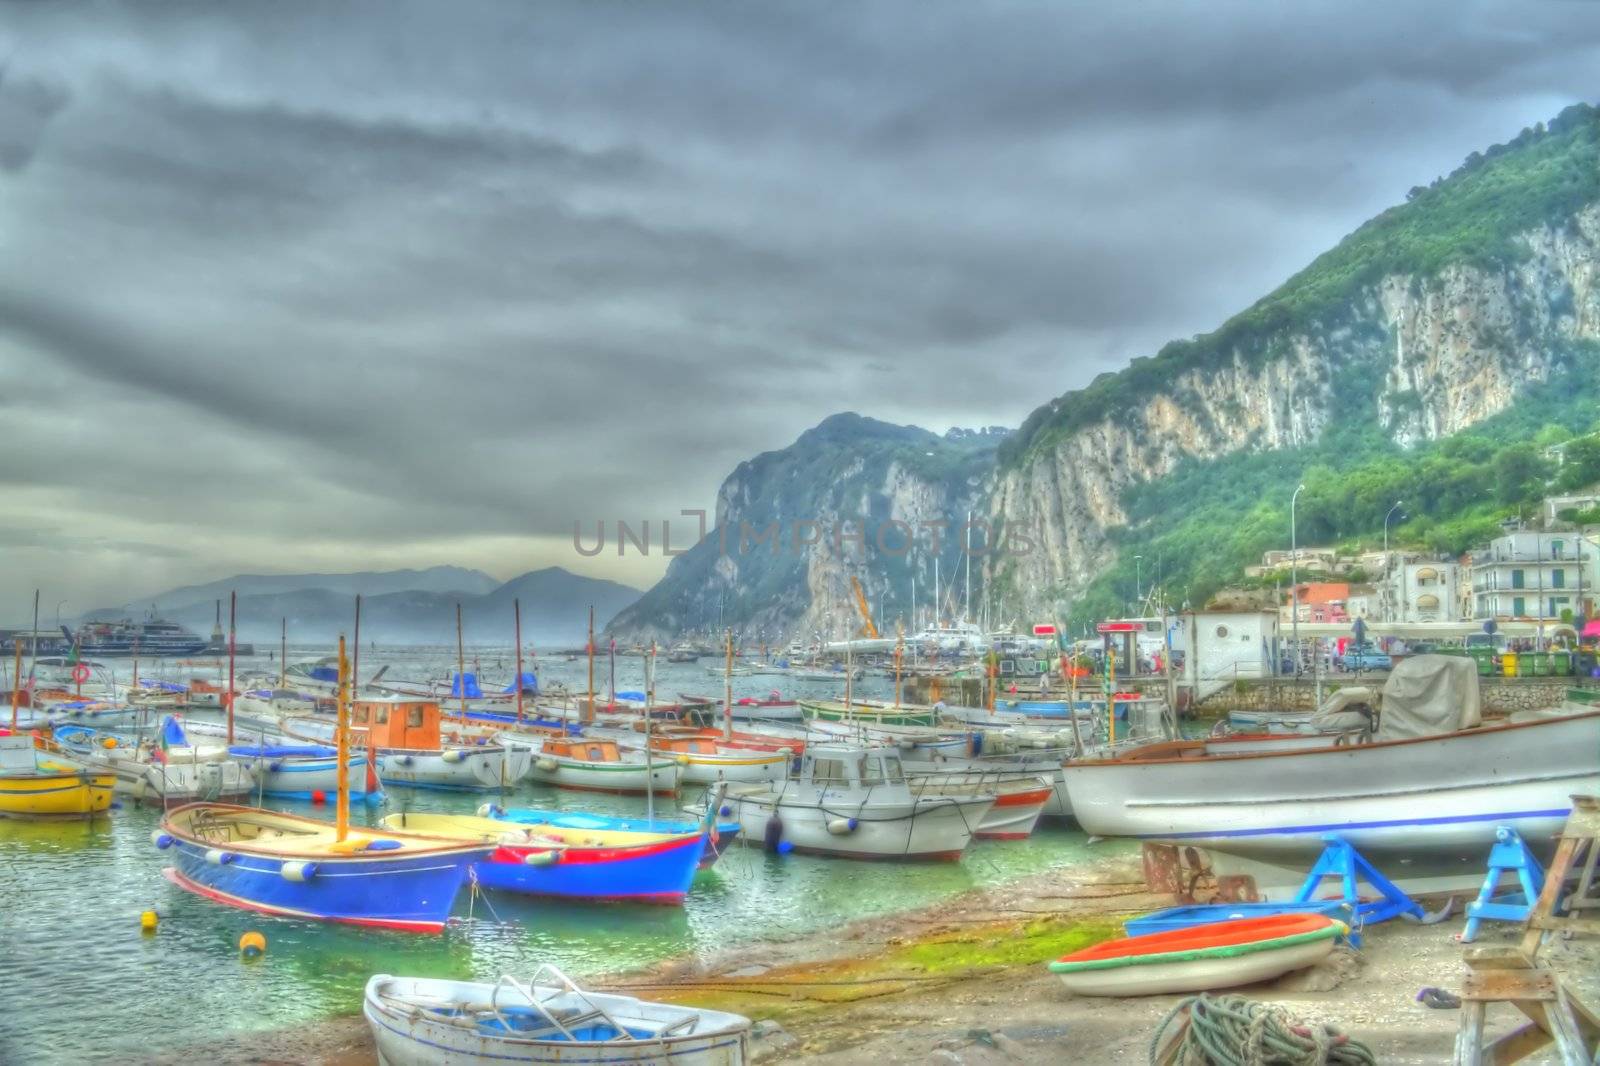 Boats of Capri Painted by jasony00